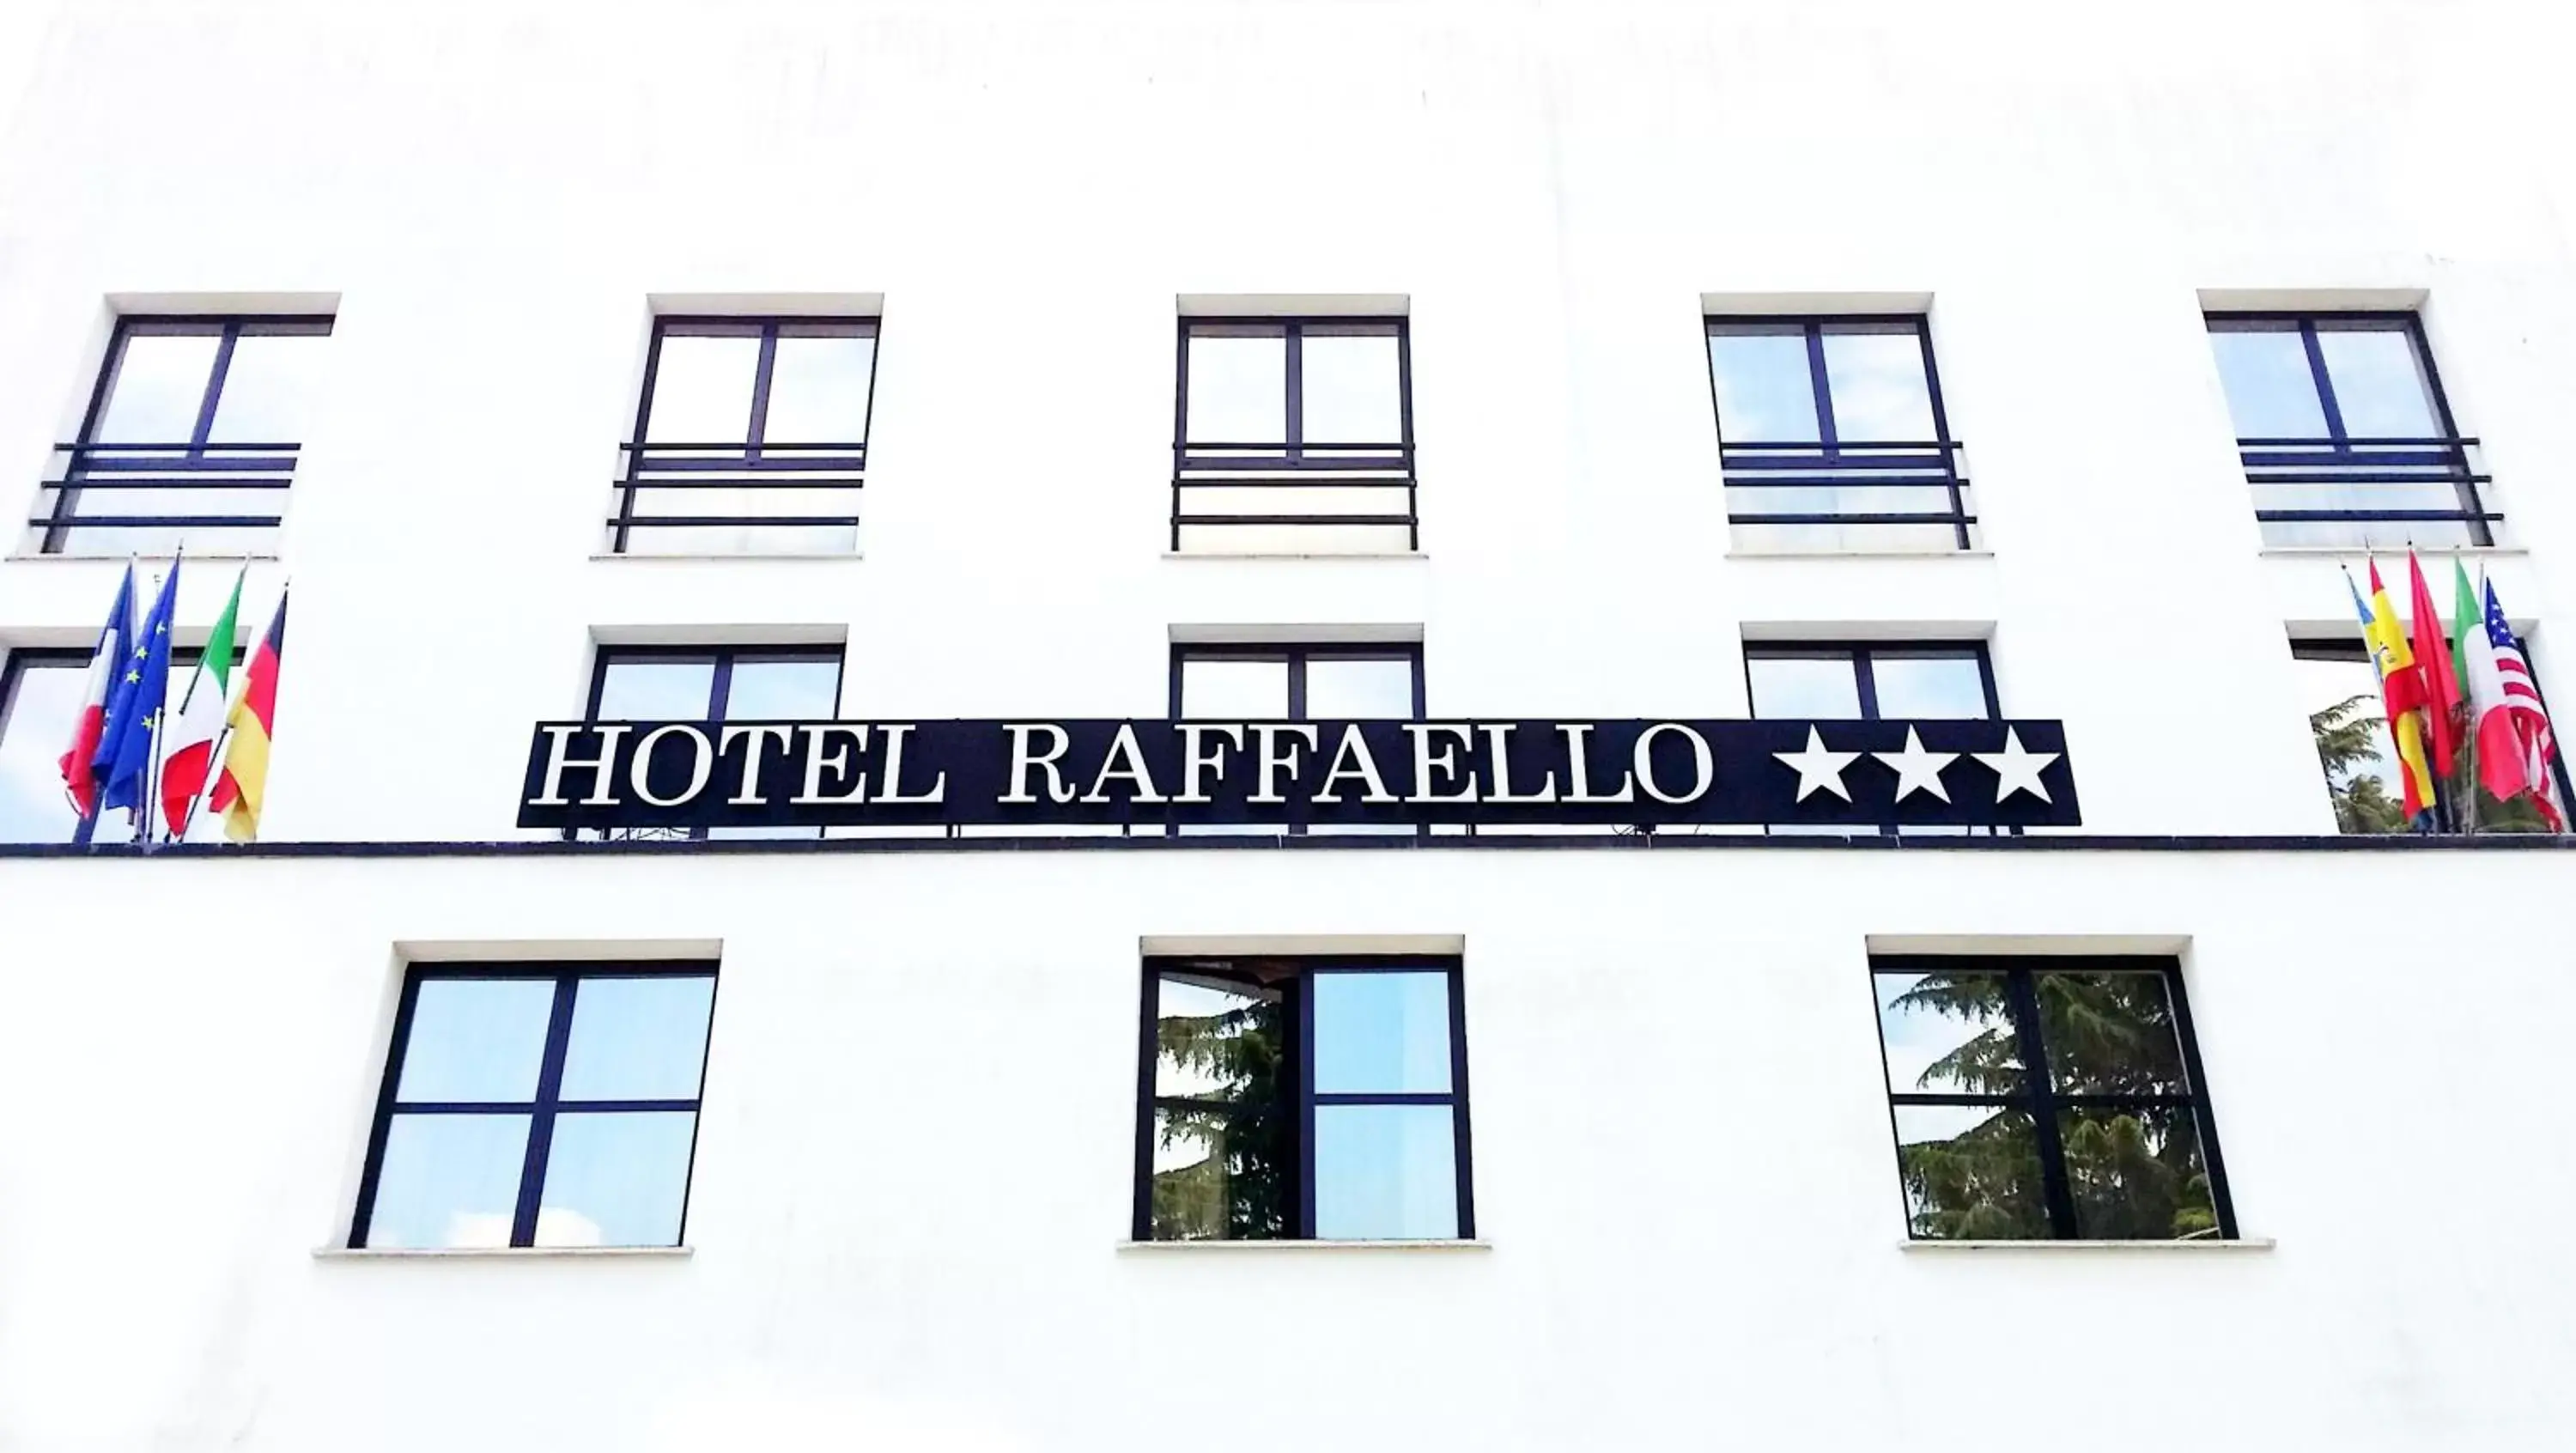 Property building, Facade/Entrance in Hotel Raffaello